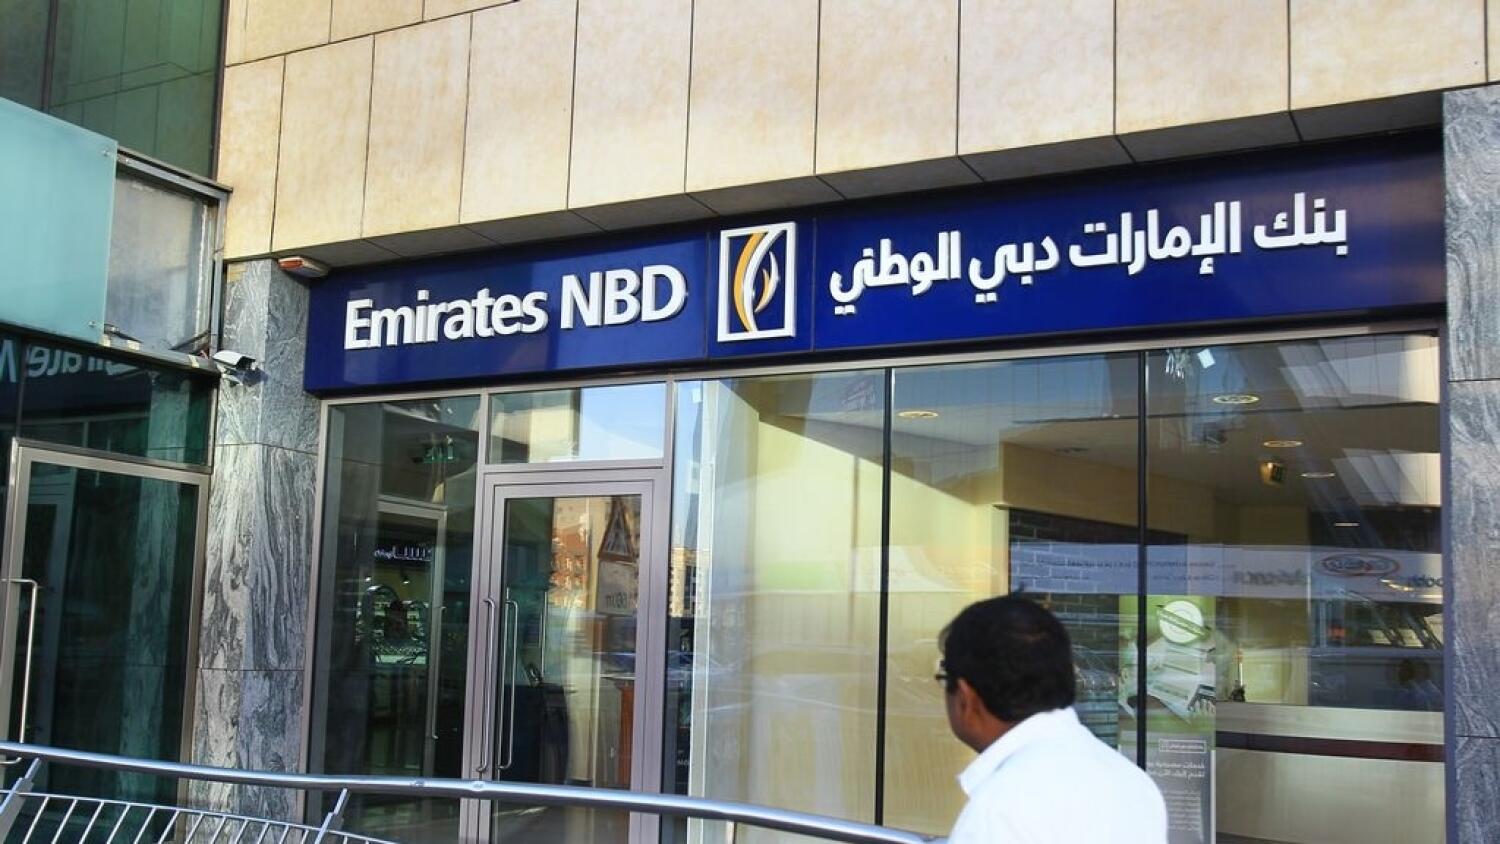 Emirates nbd bank. Банк Emirates NBD. Банк в Дубае. NBD Bank Titanium. Emirates NBD финансовые компании ОАЭ.